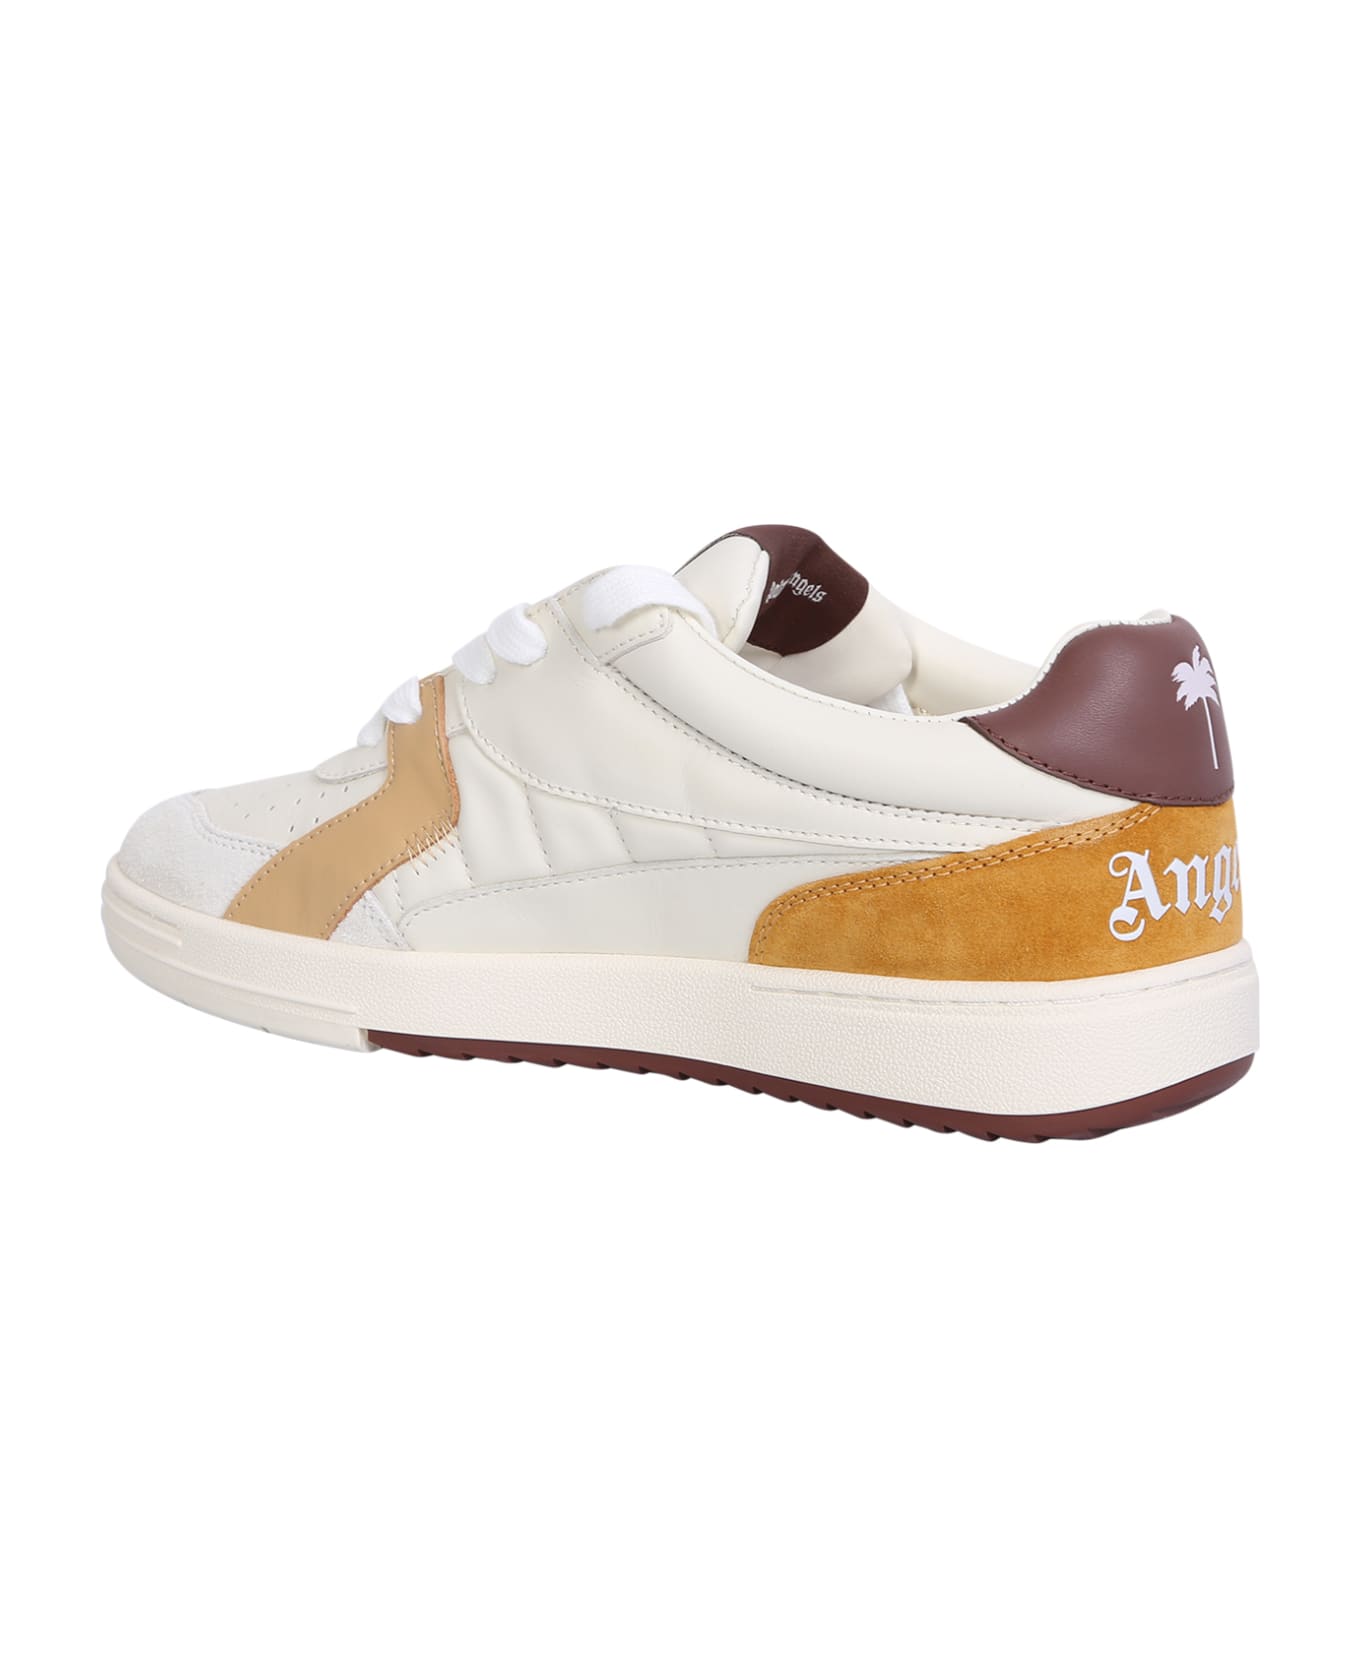 Palm Angels University Beige/brown Sneakers - Beige